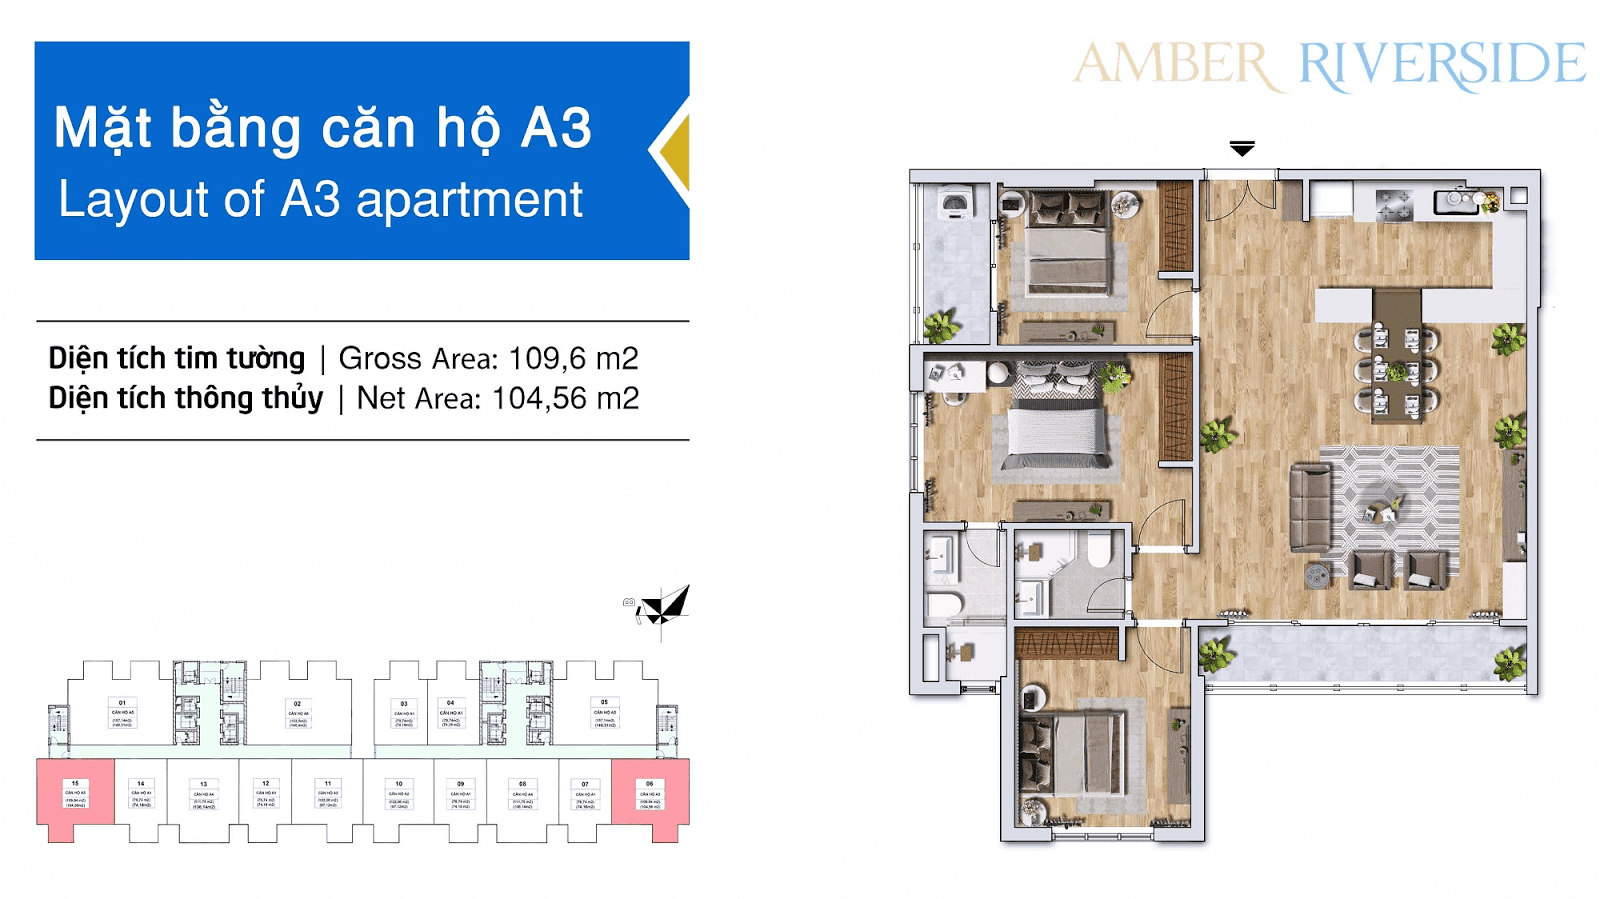 Thiết kế căn hộ A3 dự án Amber Riverside 622 Minh Khai